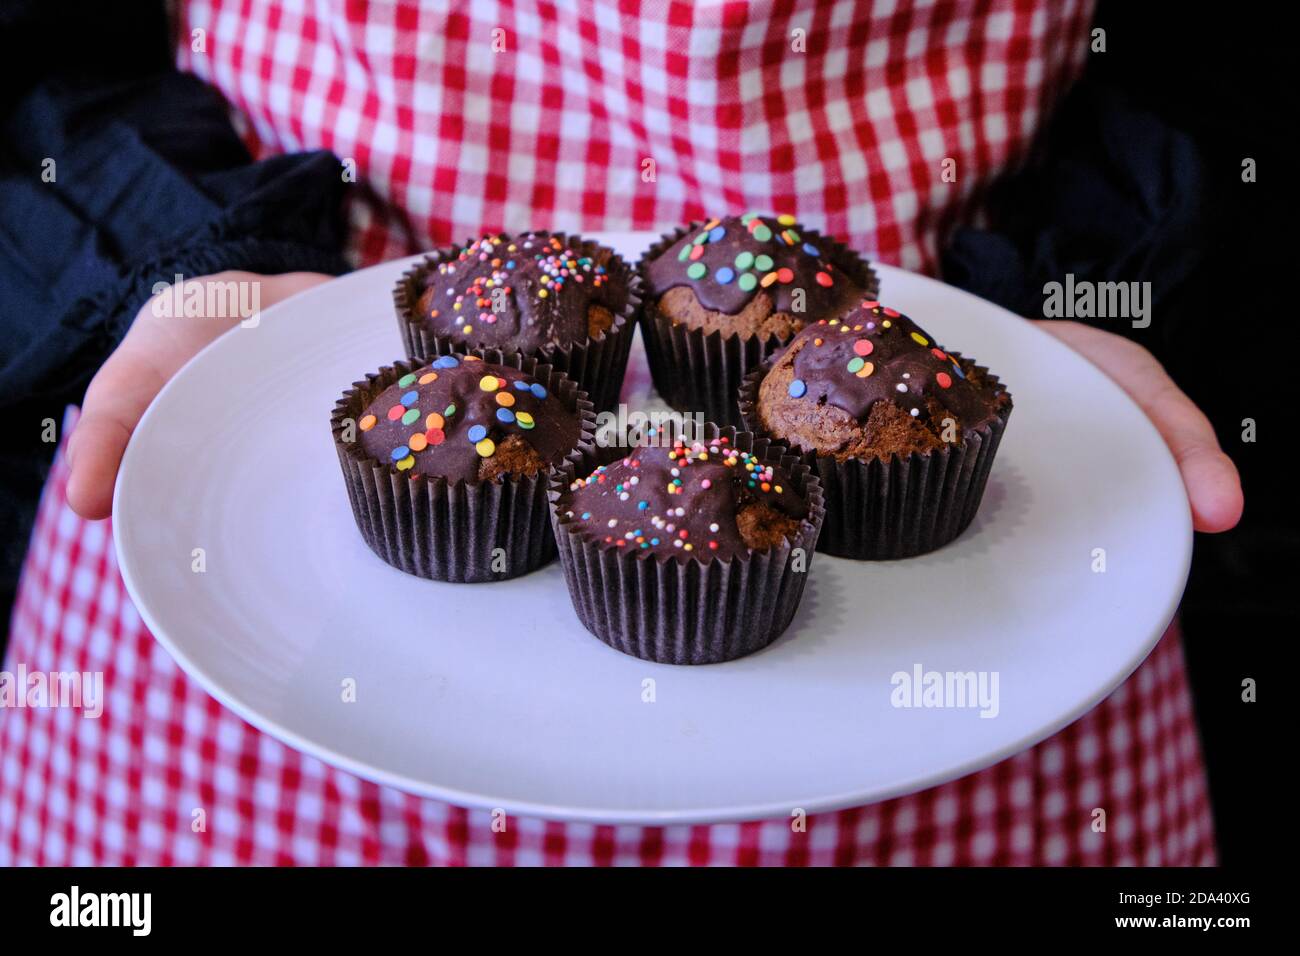 Mädchen hält Muffins mit Schokolade. Frau mit Kuchen in einer Bonbons-Beschichtung.  Teller mit Schokoladenmuffins auf dem Hintergrund eines Mädchens in einer  Schürze Stockfotografie - Alamy